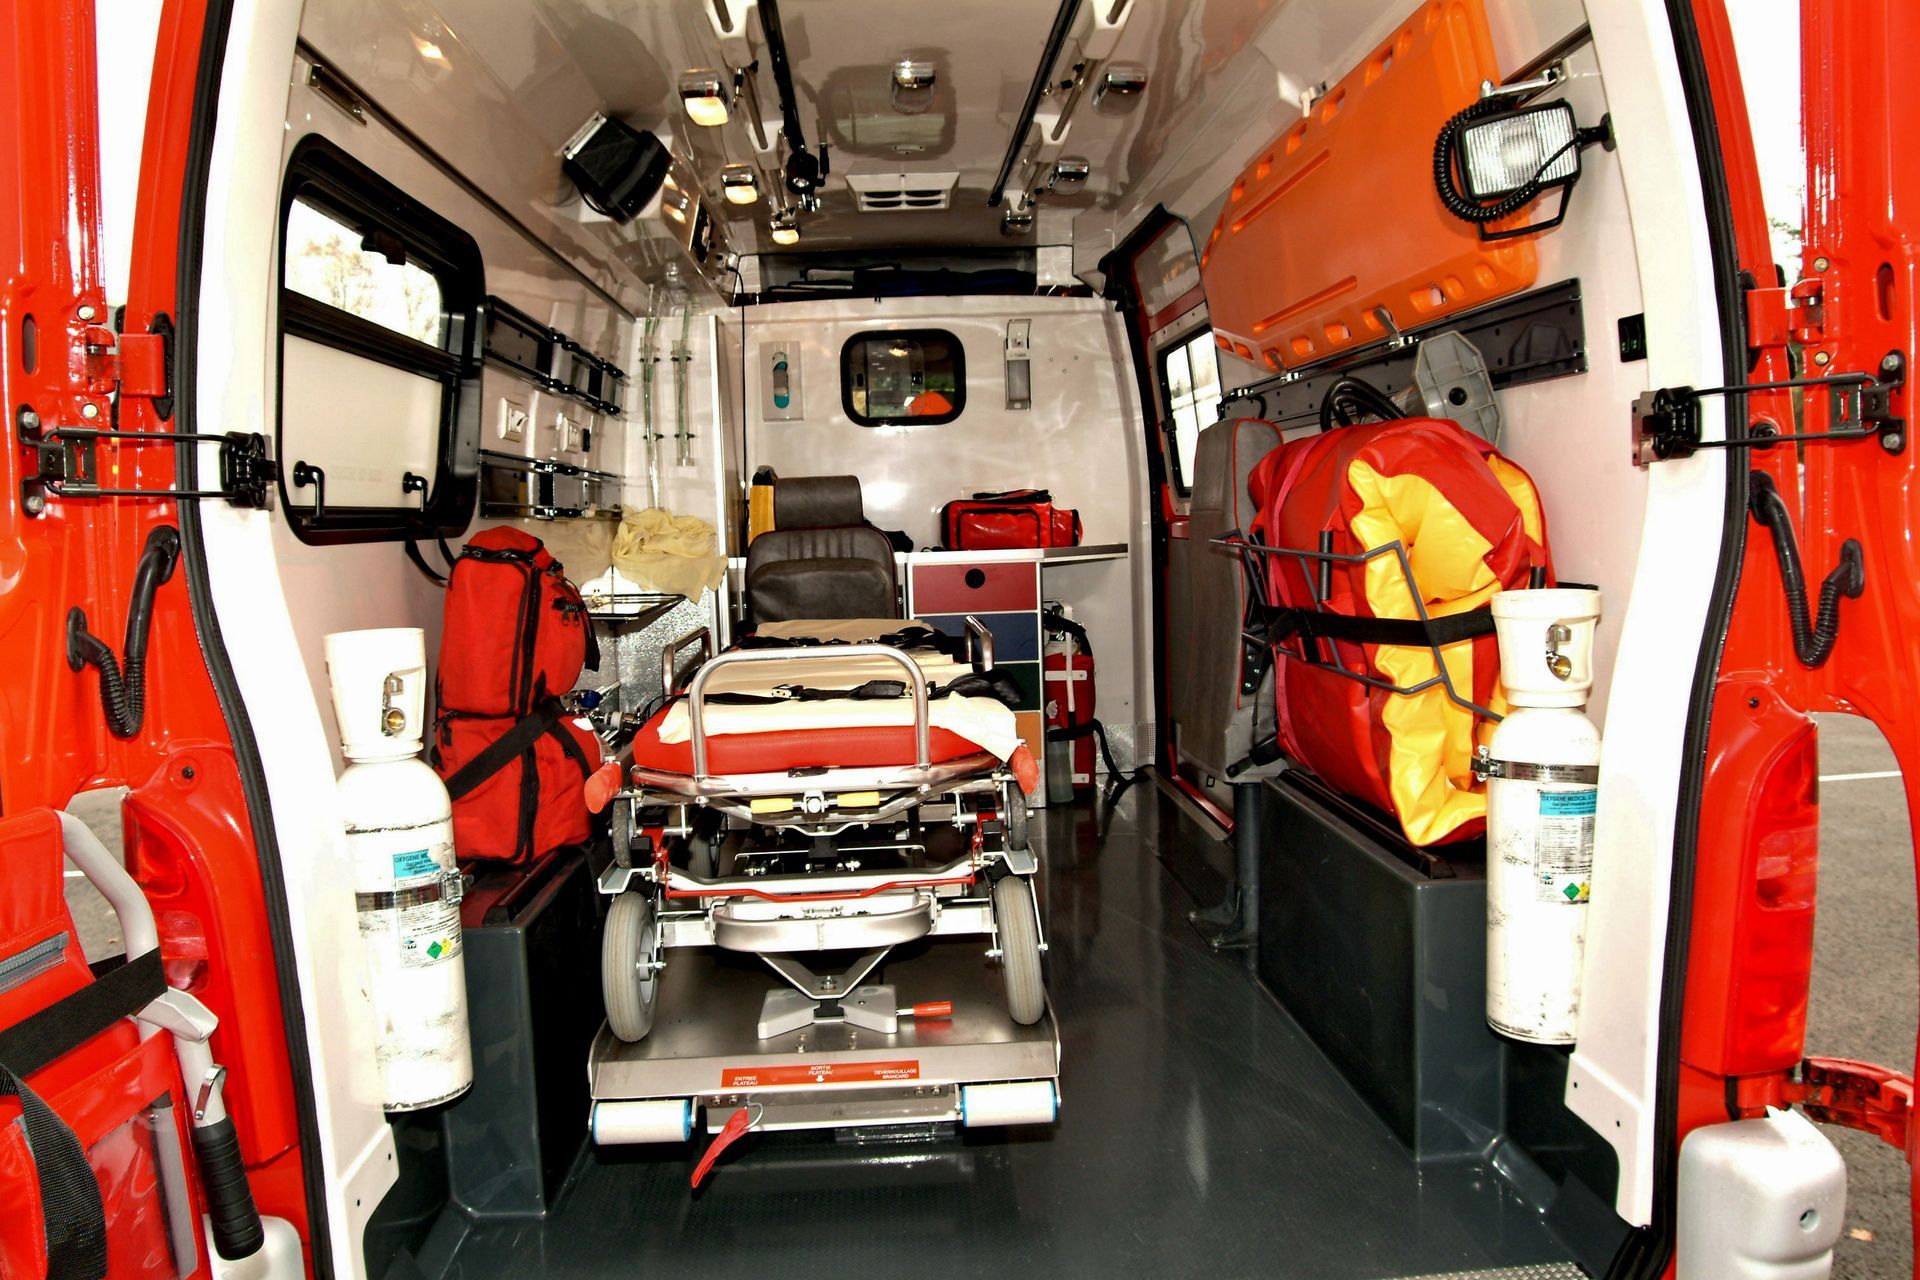 L'intérieur d'une ambulance aux portes rouges